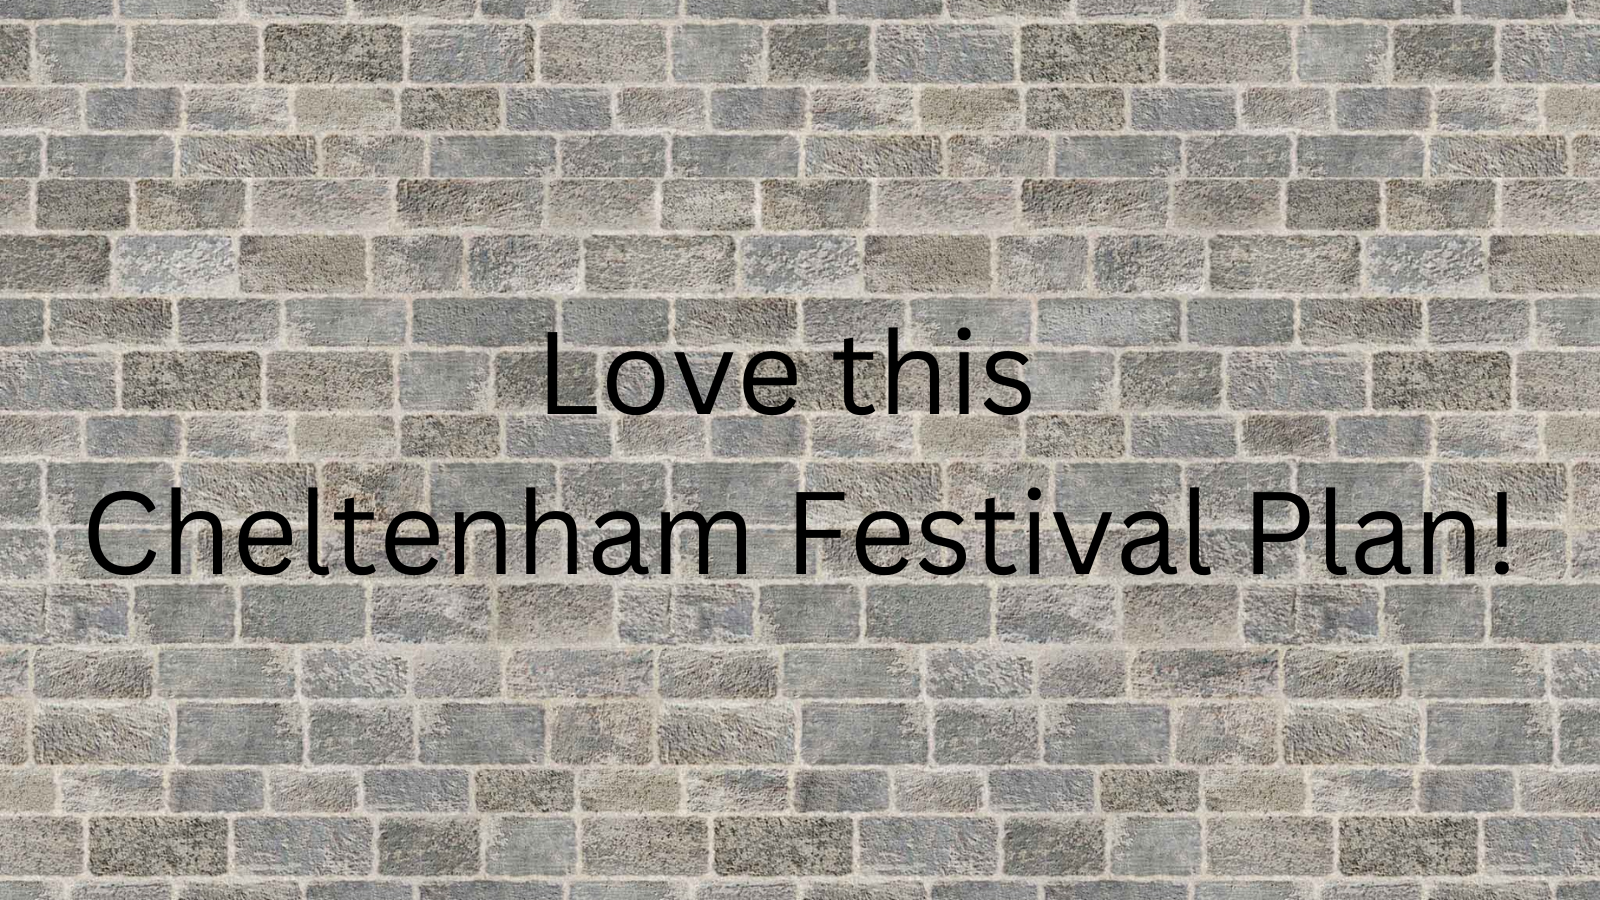 Love this Cheltenham Festival Plan!